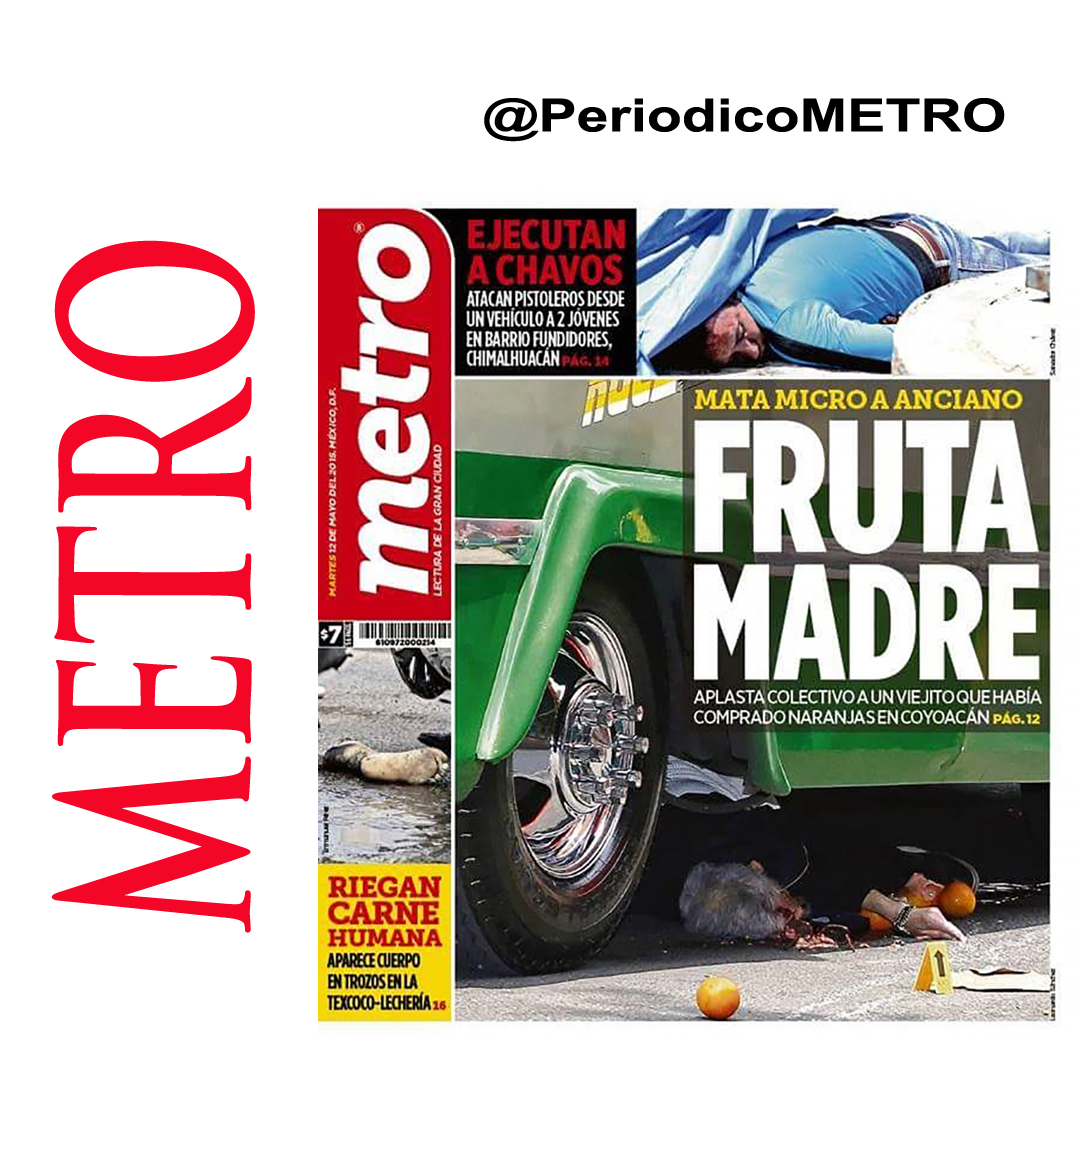 De a metro: pinturas sobre impresiones de titulares del periódico mexicano  metro